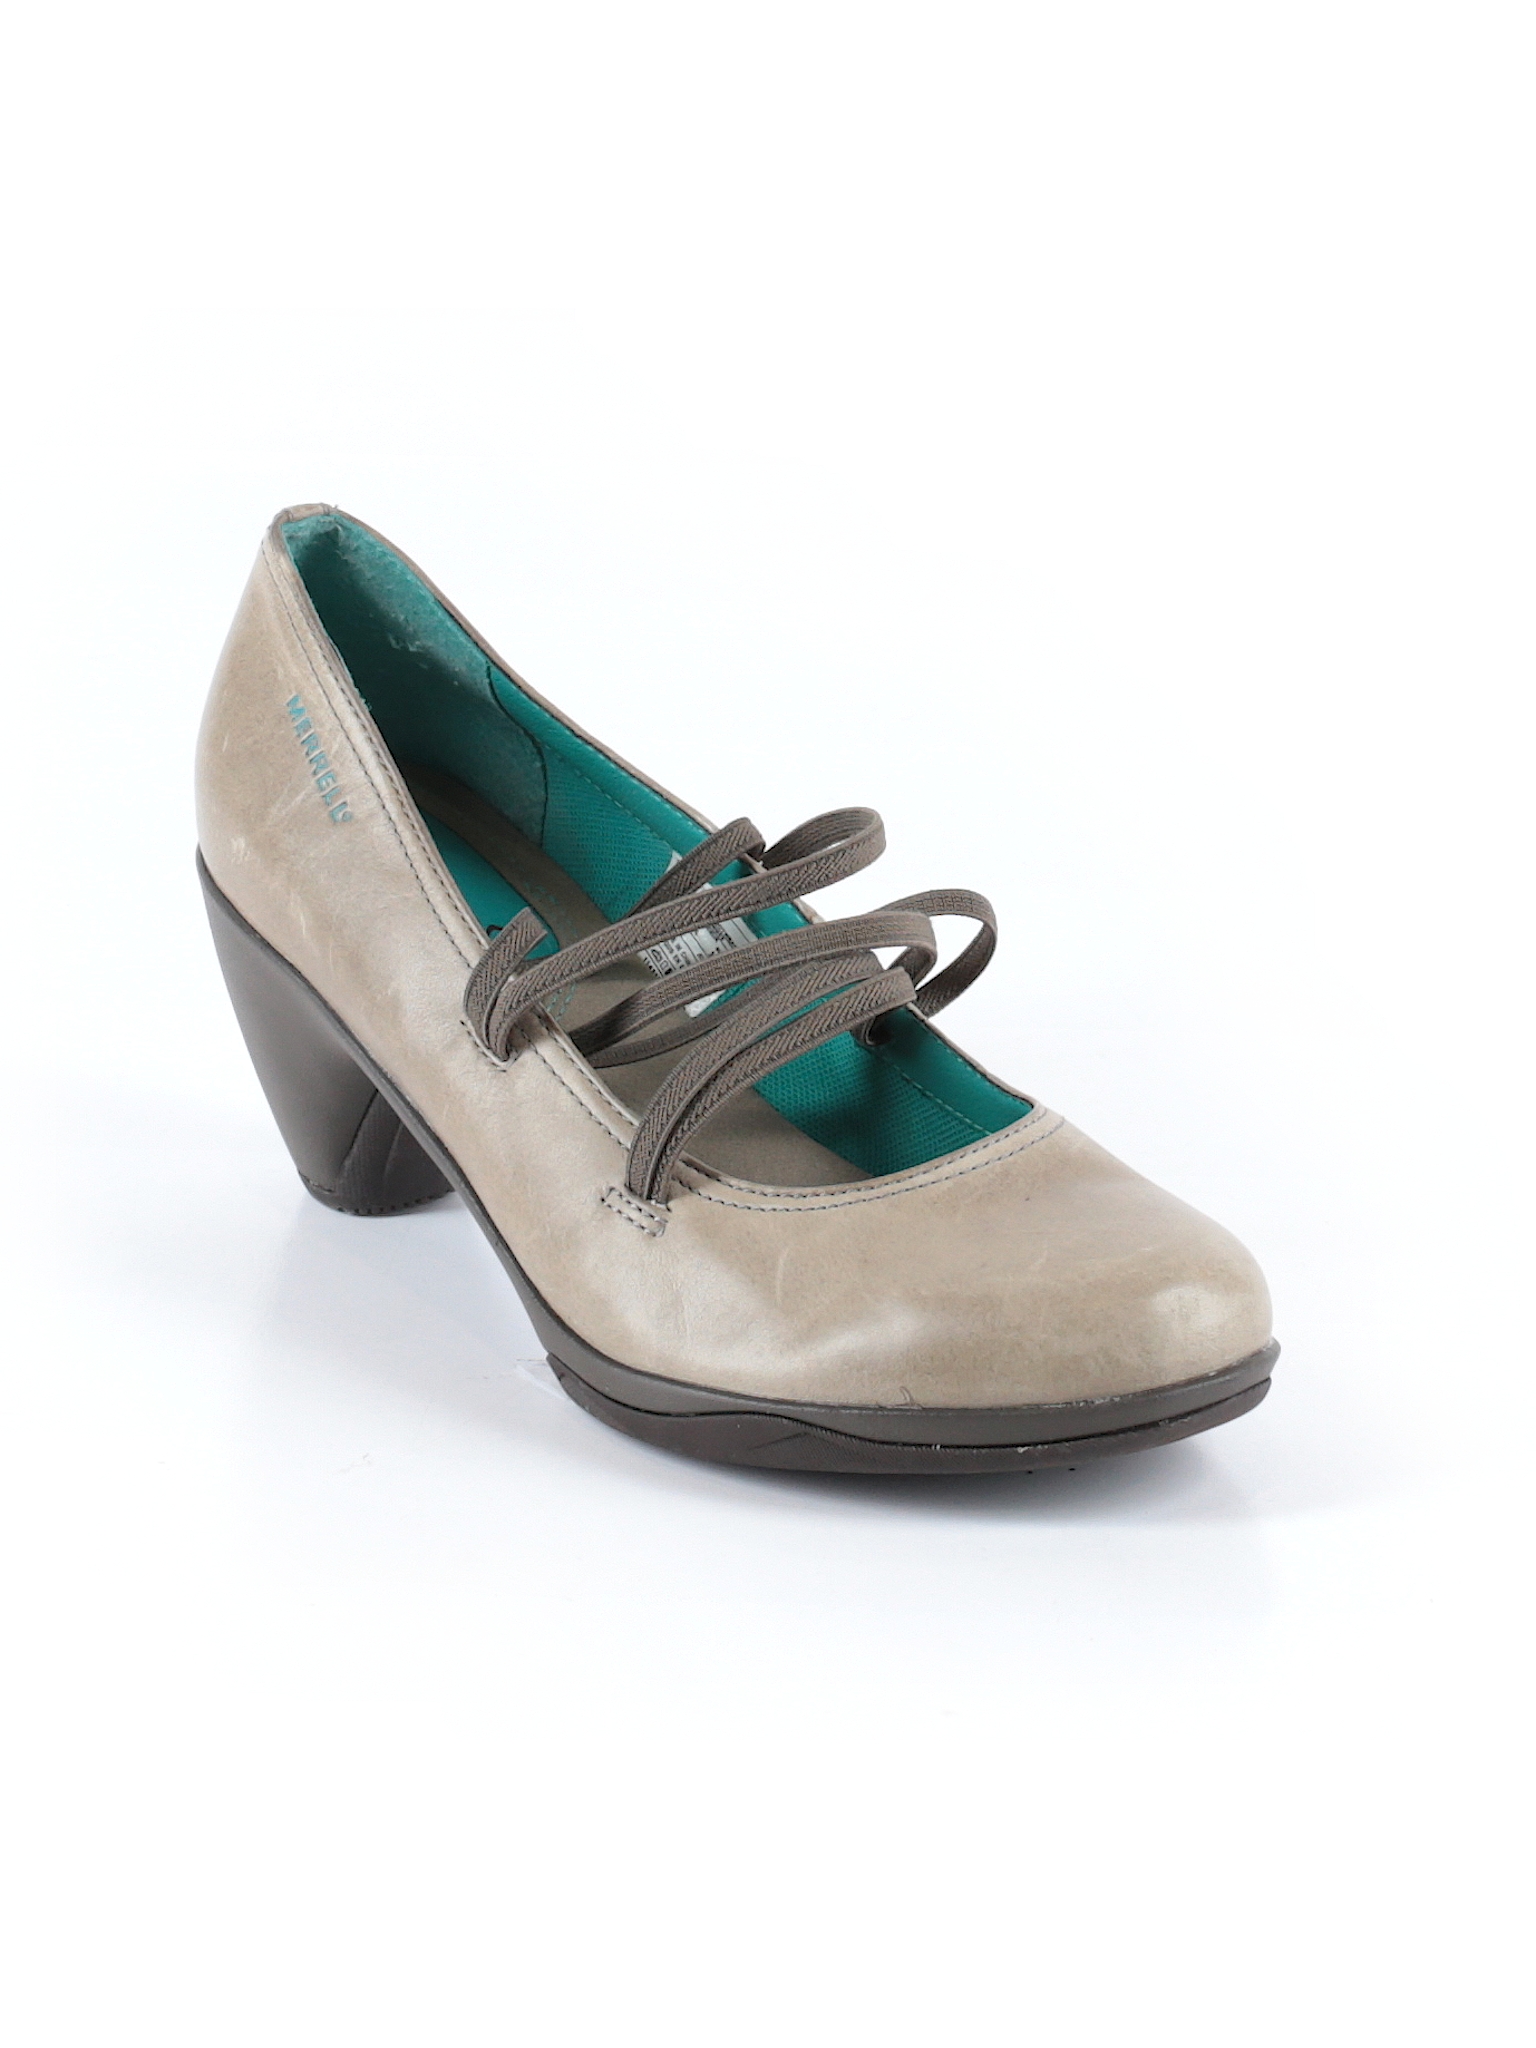 Merrell Solid Dark Green Heels Size 8 - 67% off | thredUP